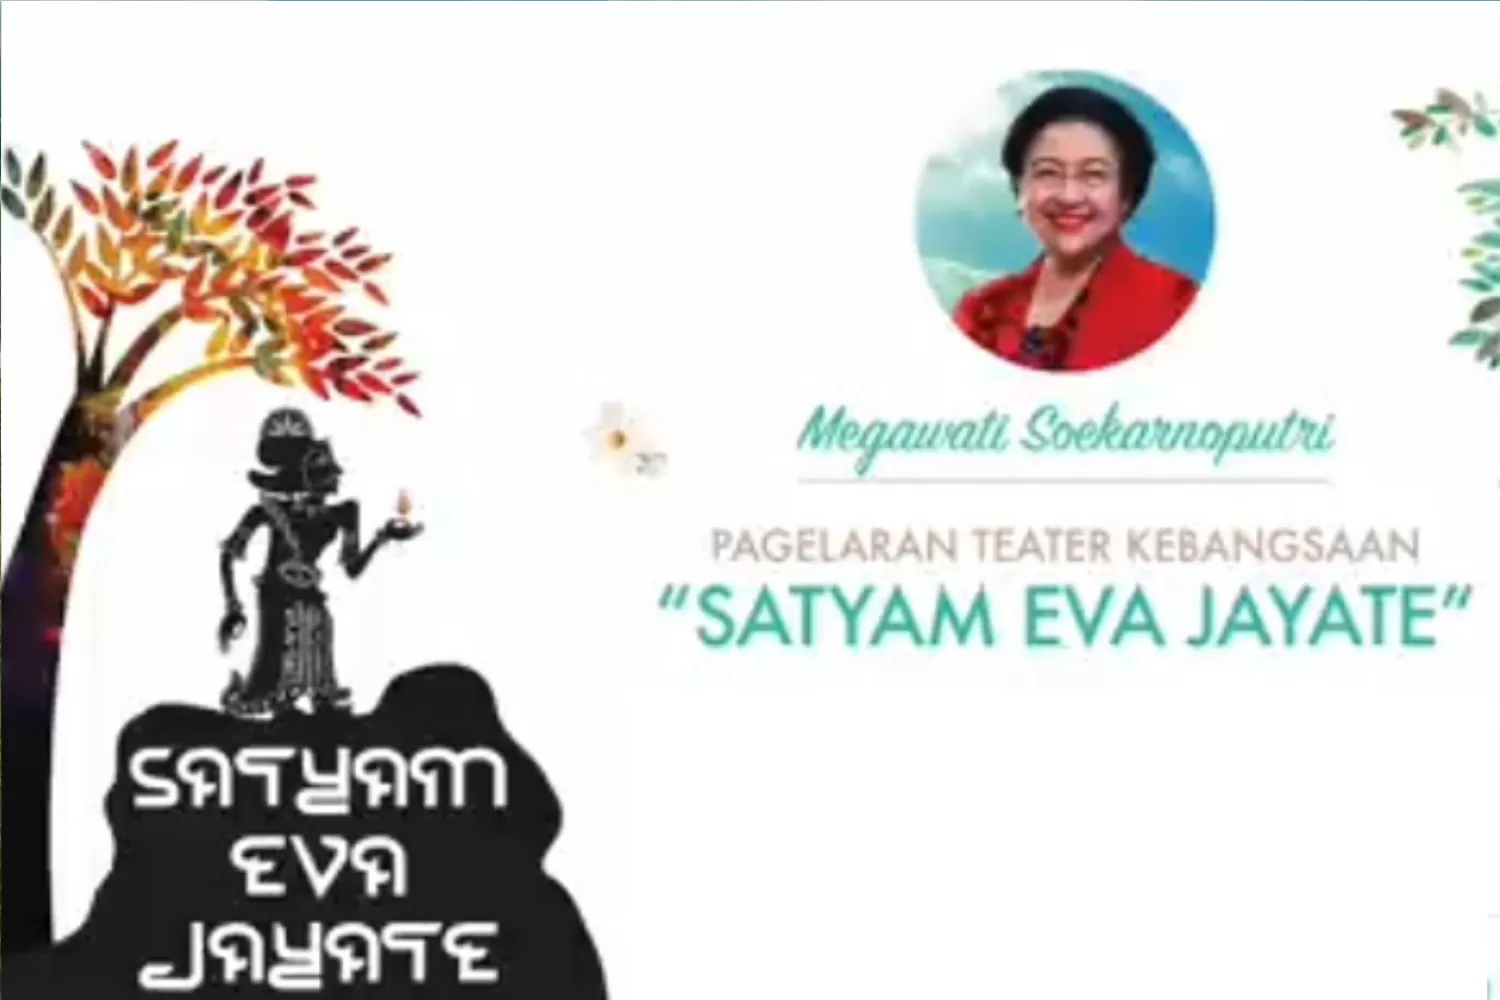 Satyam Eva Jayate Artinya Apa? Berikut Arti dan Makna dari Tema HUT PDIP ke-51, Ada Kaitan dengan Kerajaan